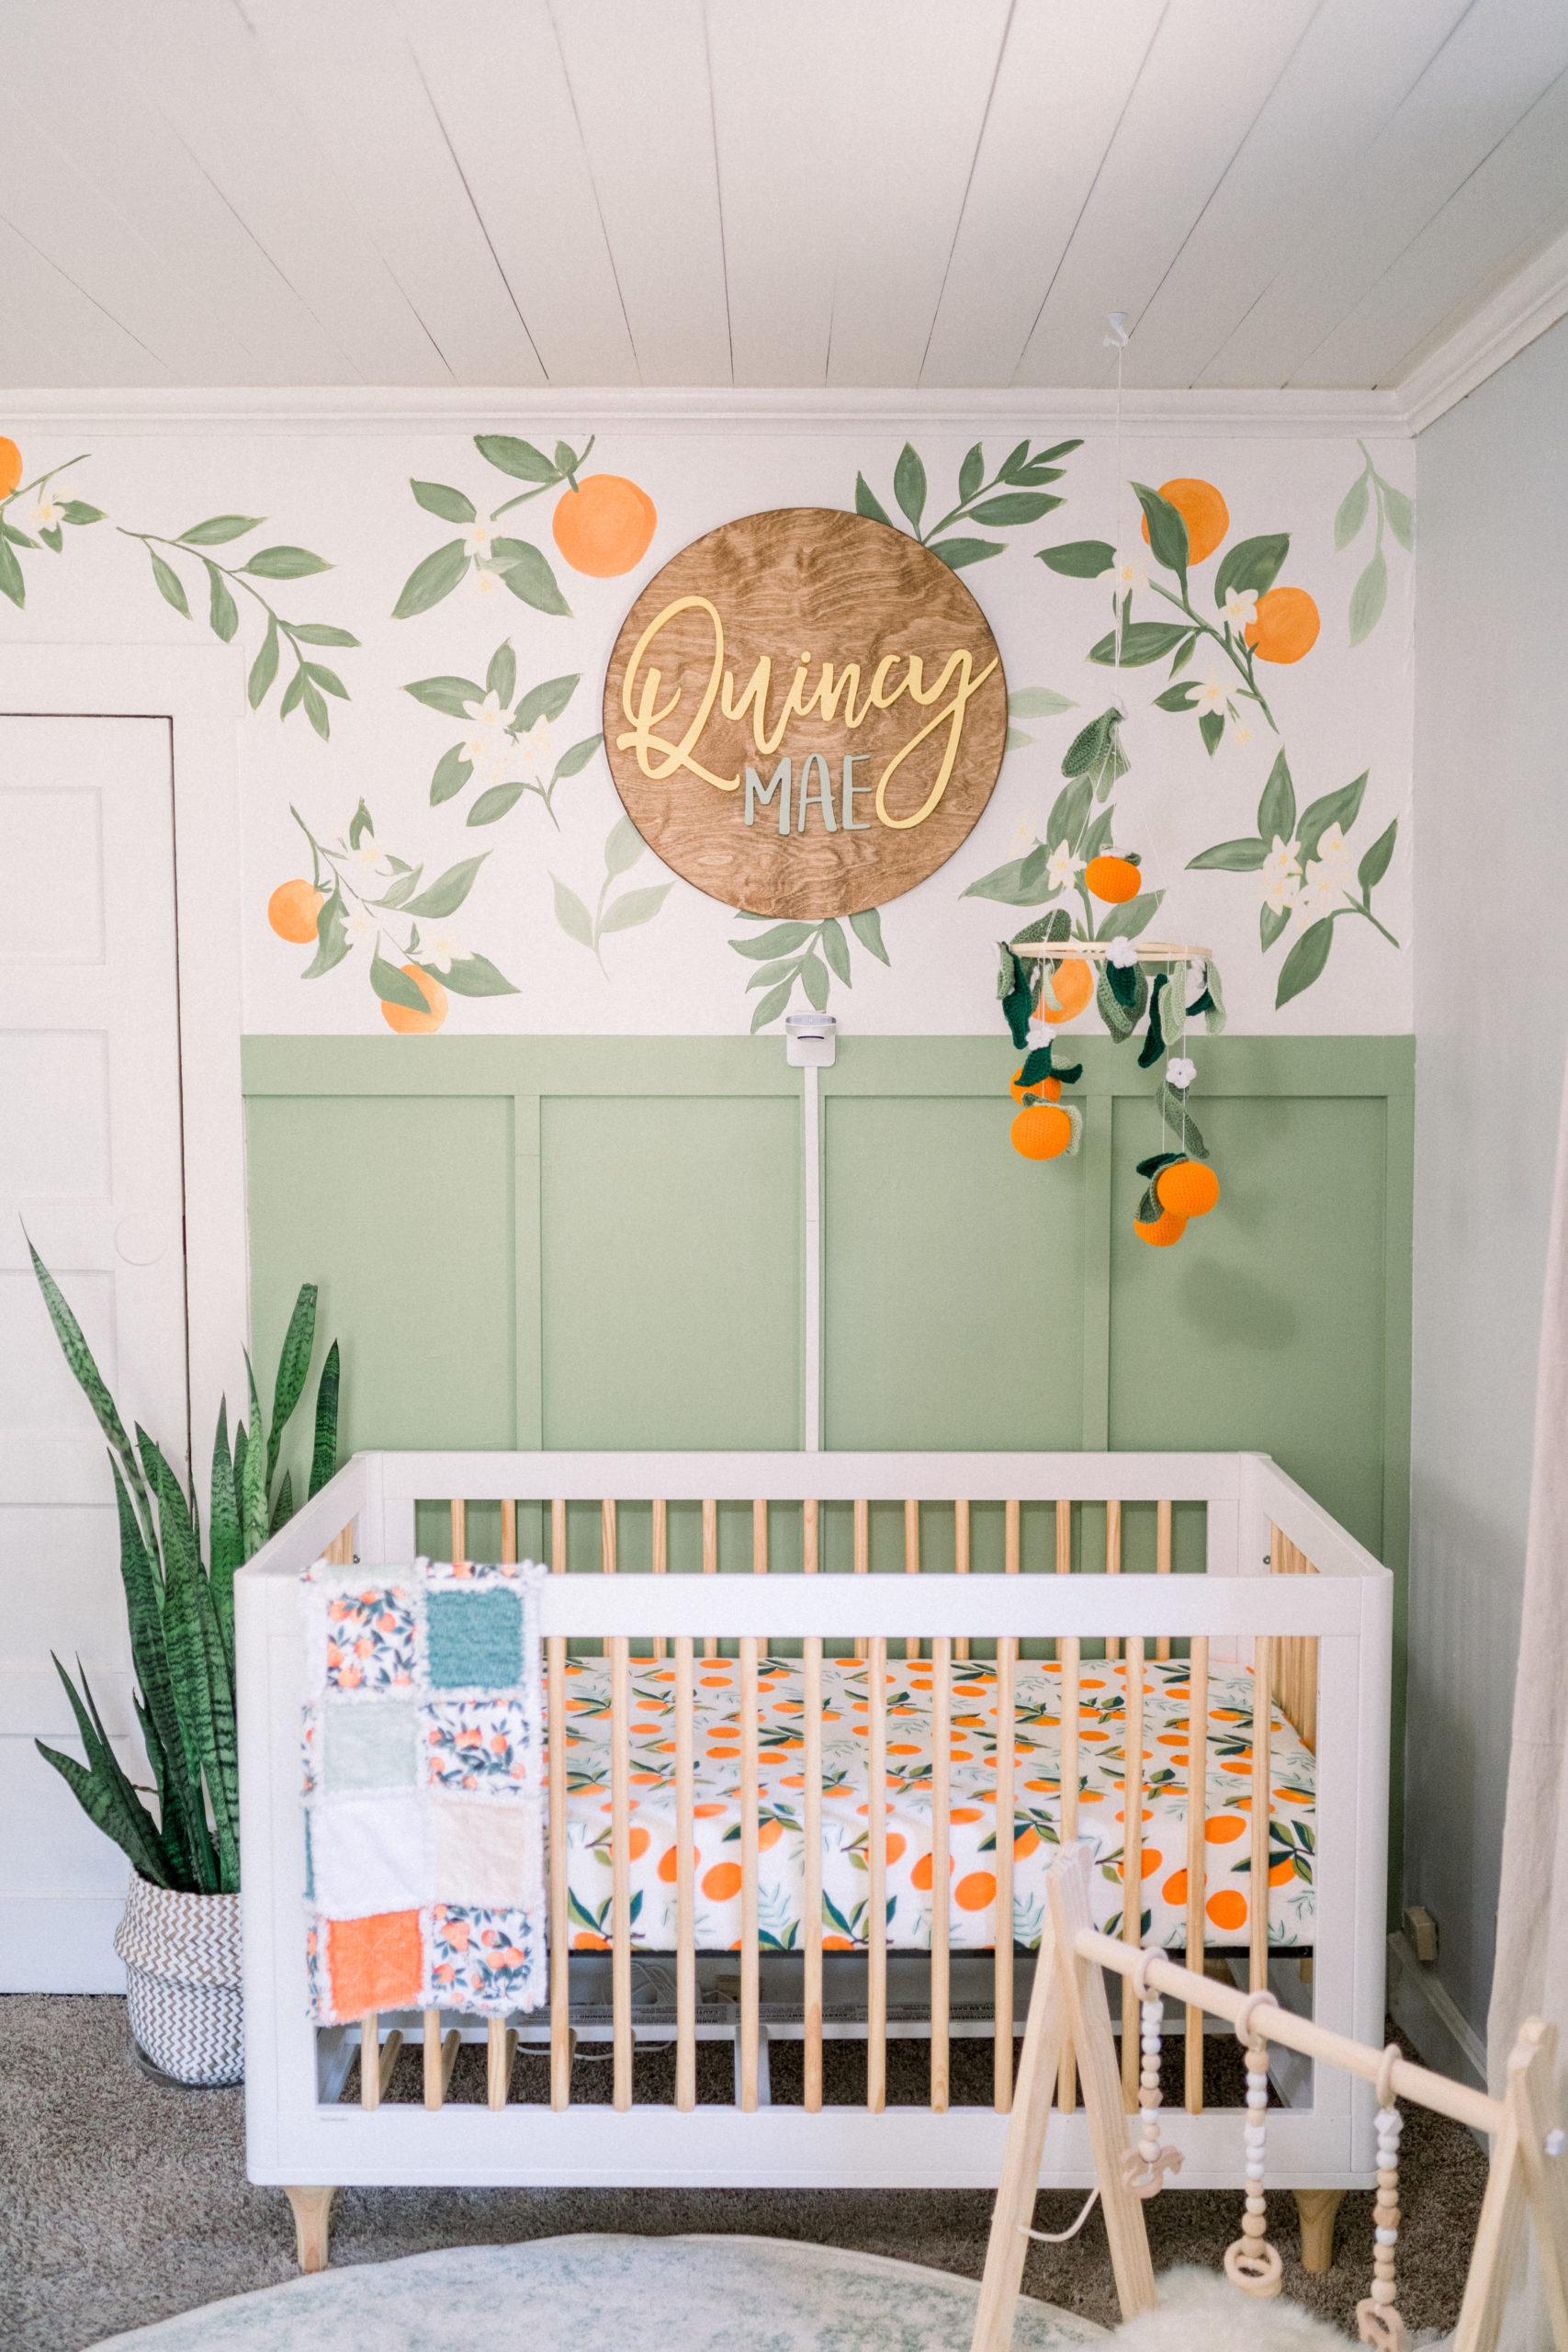 Clementine nursery decor